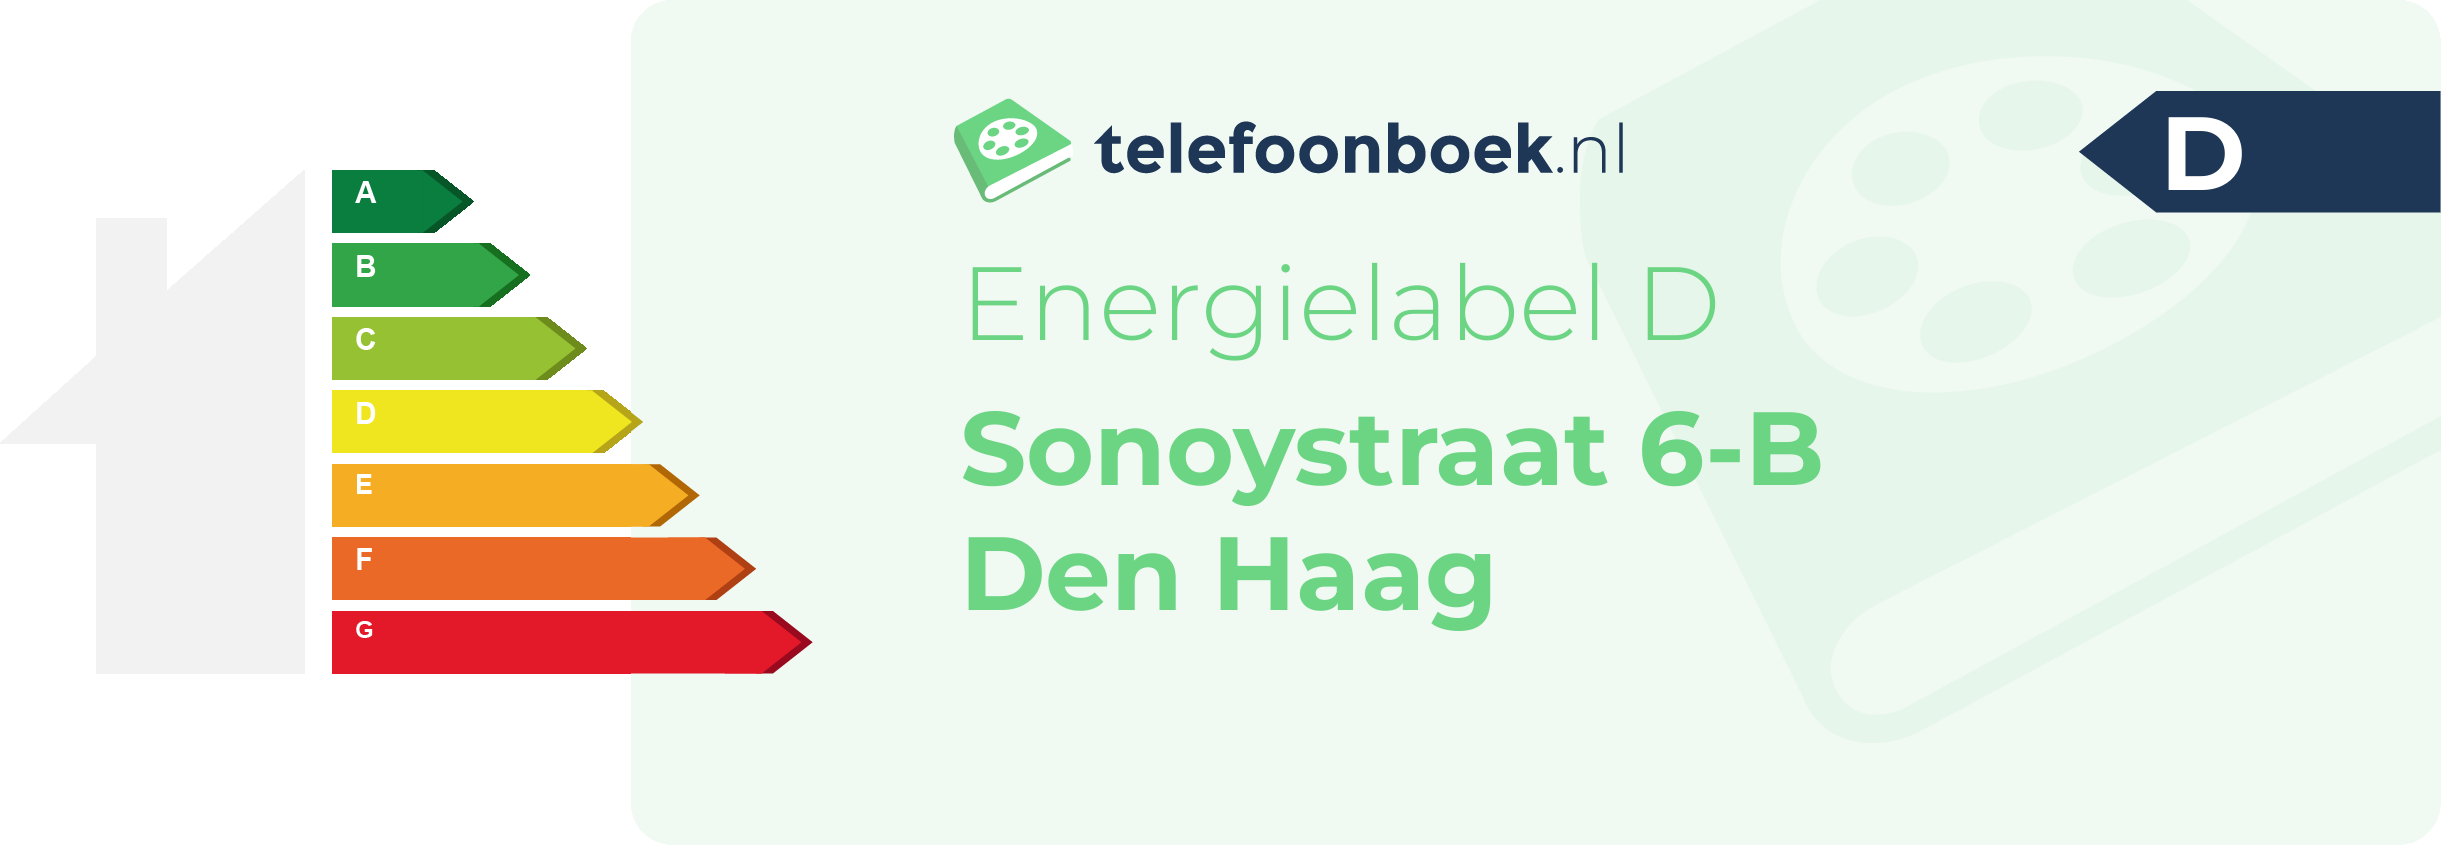 Energielabel Sonoystraat 6-B Den Haag